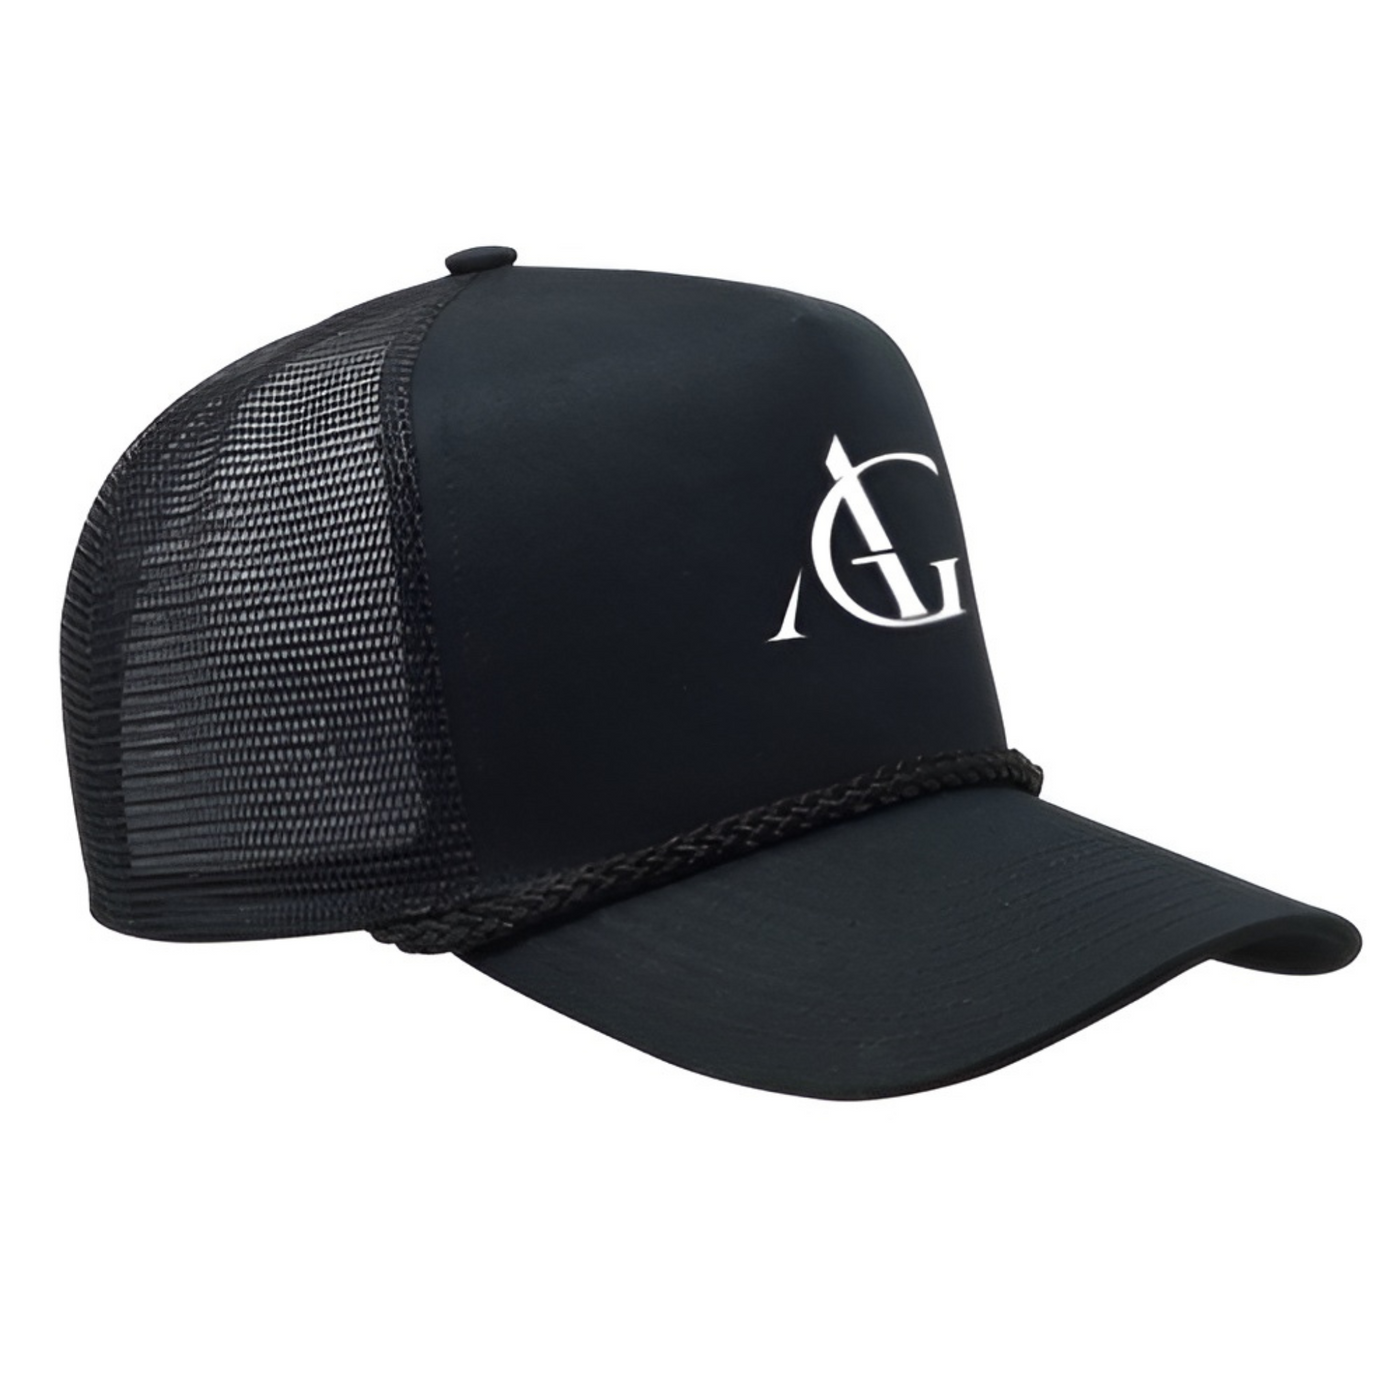 Austin Giorgio Corded Trucker Hat - Black